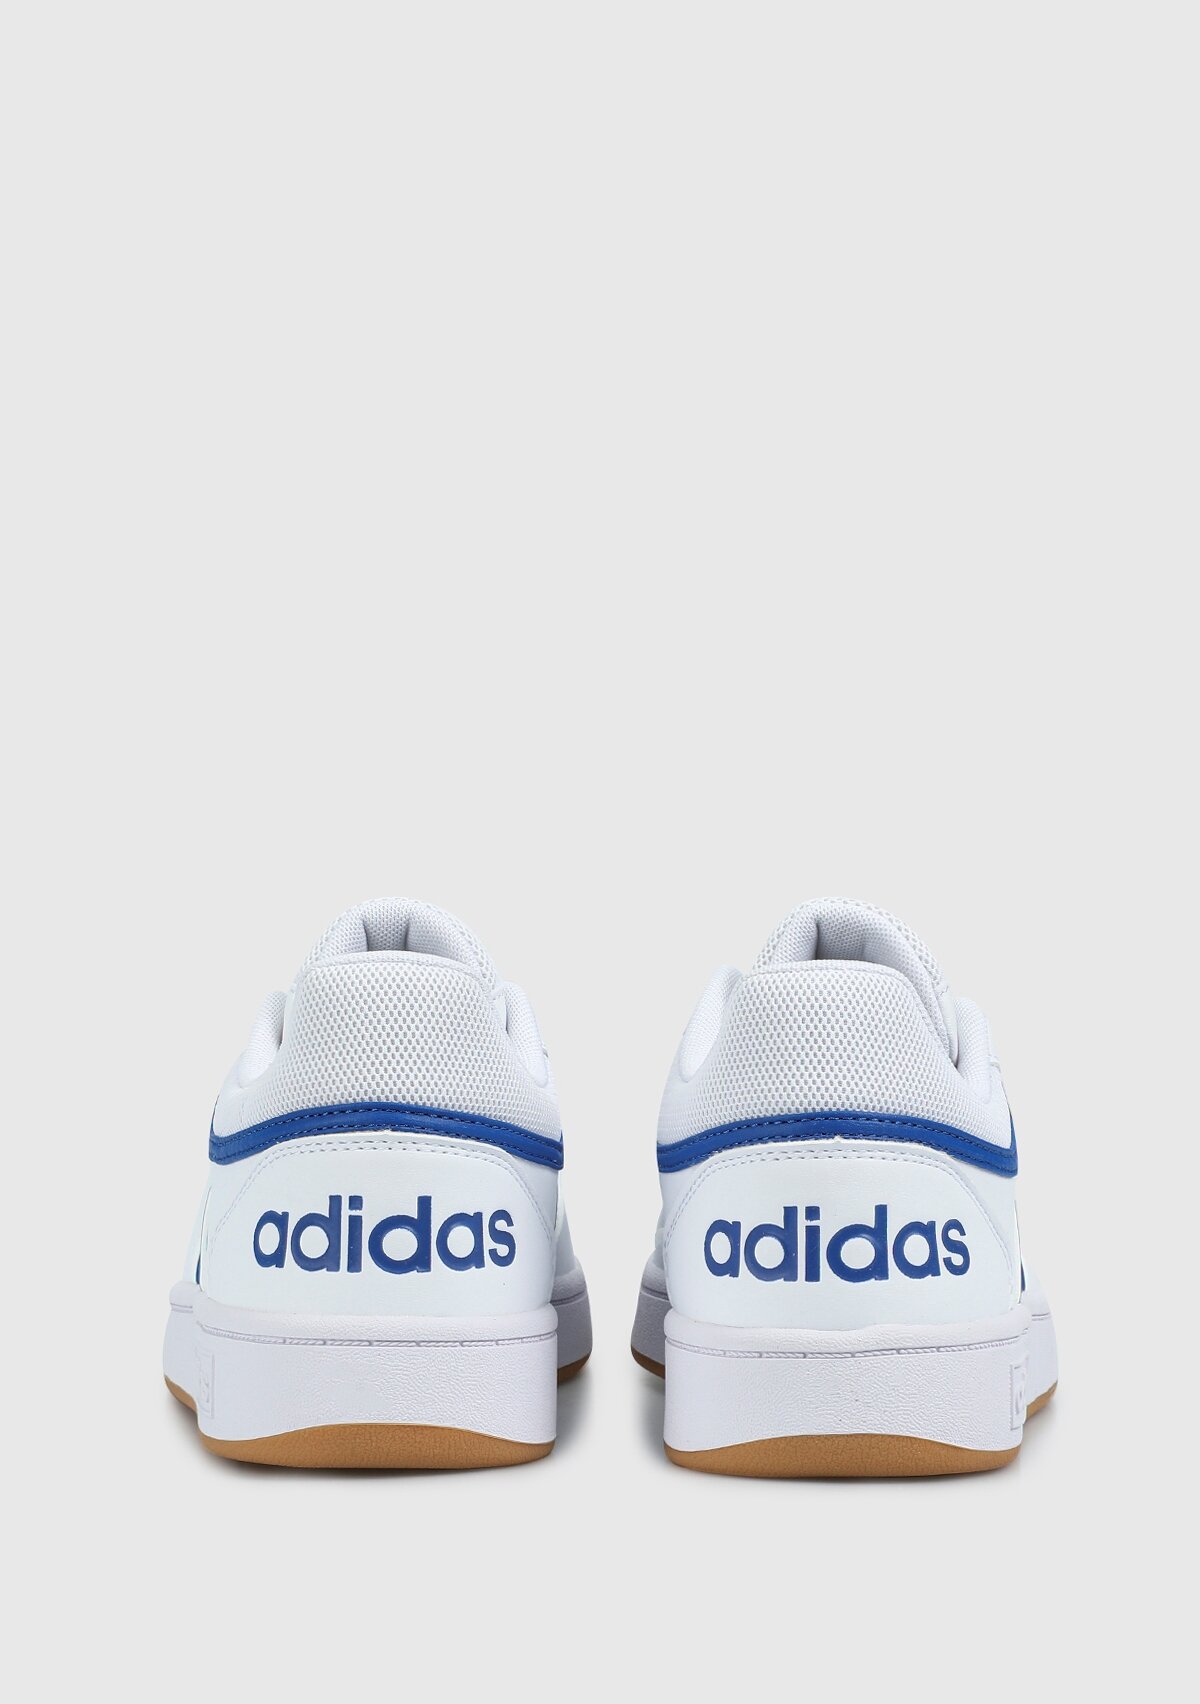 adidas Hoops 3.0 Beyaz Erkek Basketbol Ayakkabısı Gy5435